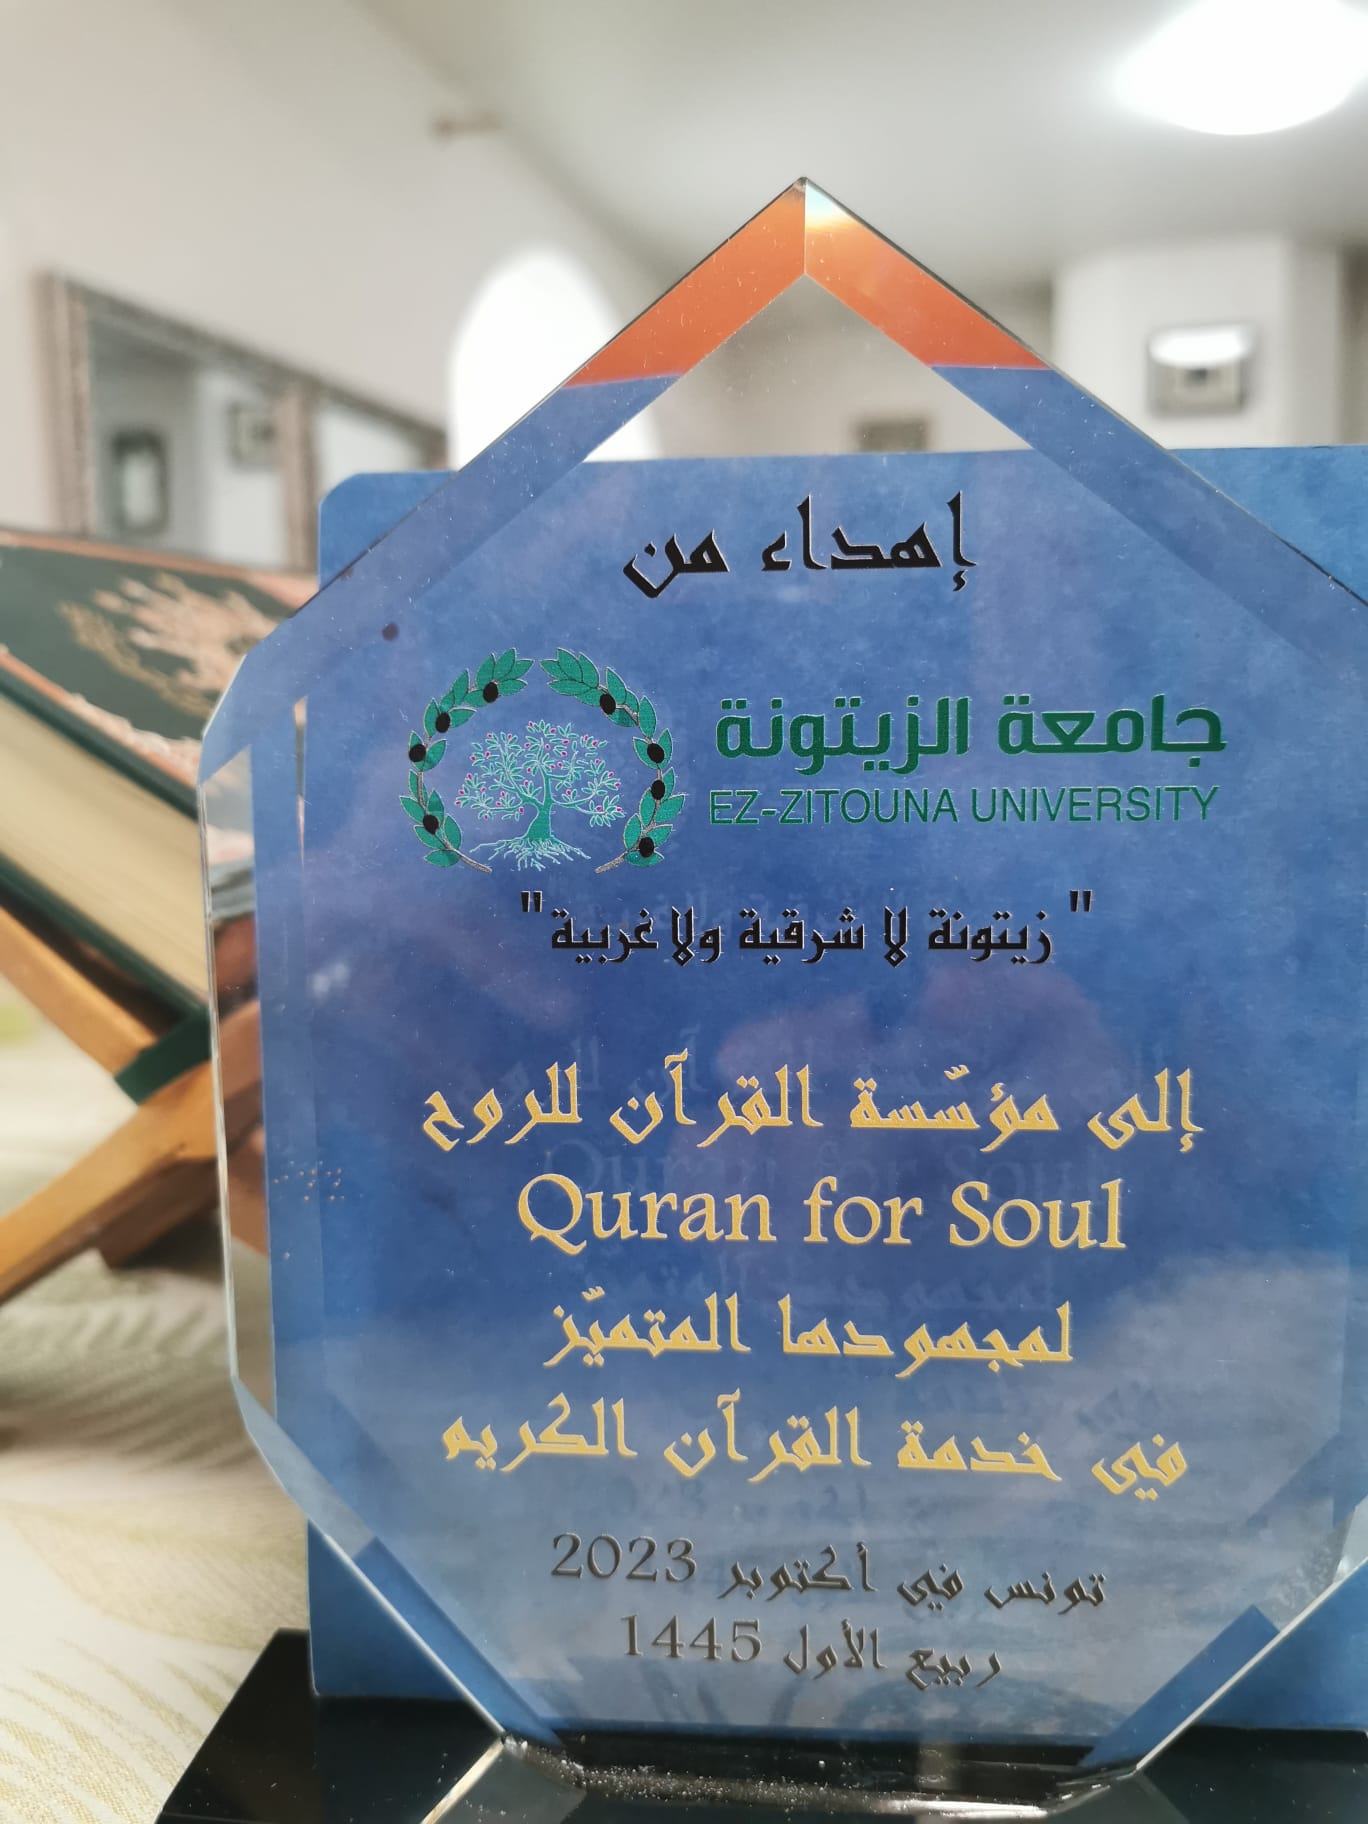 جامعة الزيتونة تكرم مؤسسة القرآن للروح لتفانيها في خدمة القرآن الكريم